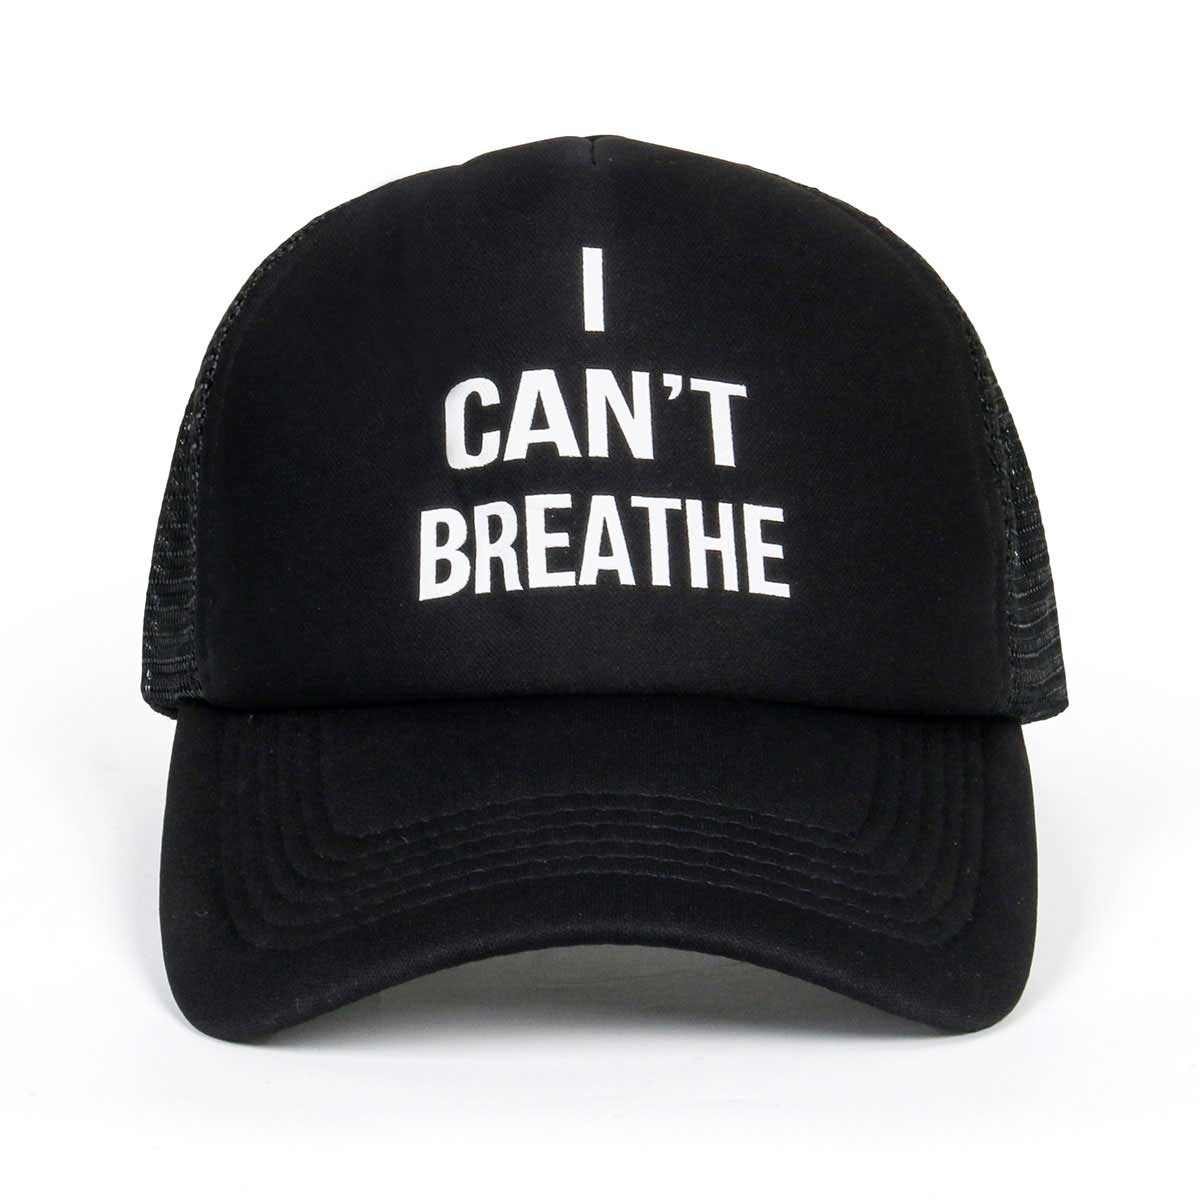 No puedo respirar la gorra de béisbol con gorra ajustable casual ocio sombrero de otoño verano